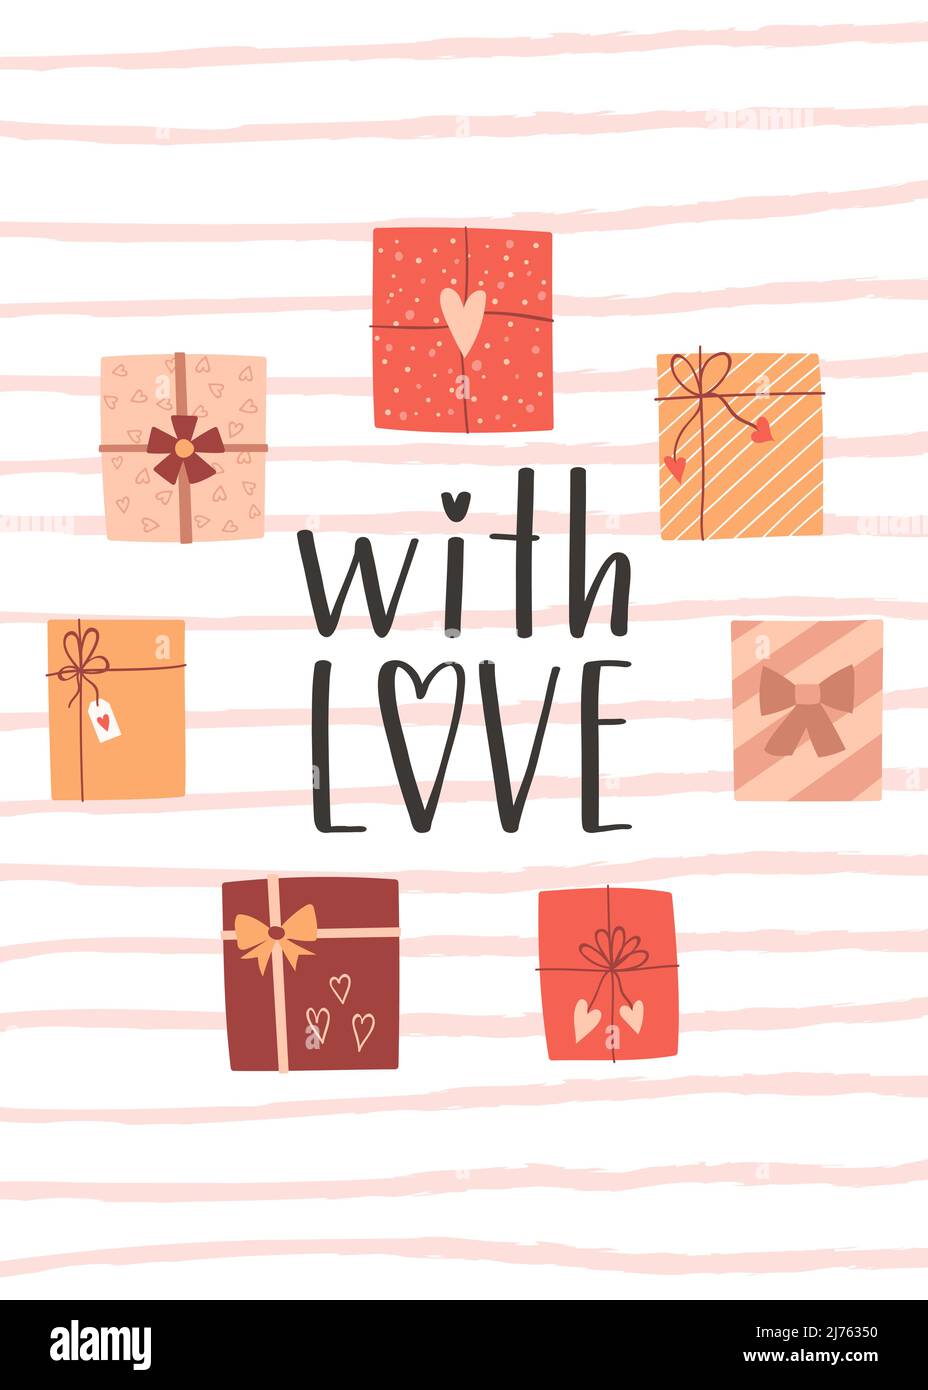 Eine Valentinstags- oder Geburtstagskarte mit Geschenkschachteln und einer handgeschriebenen Phrase – mit Liebe. Ein Symbol der Liebe, Romantik, Dankbarkeit. Farbe flach Vektor-illus Stock Vektor